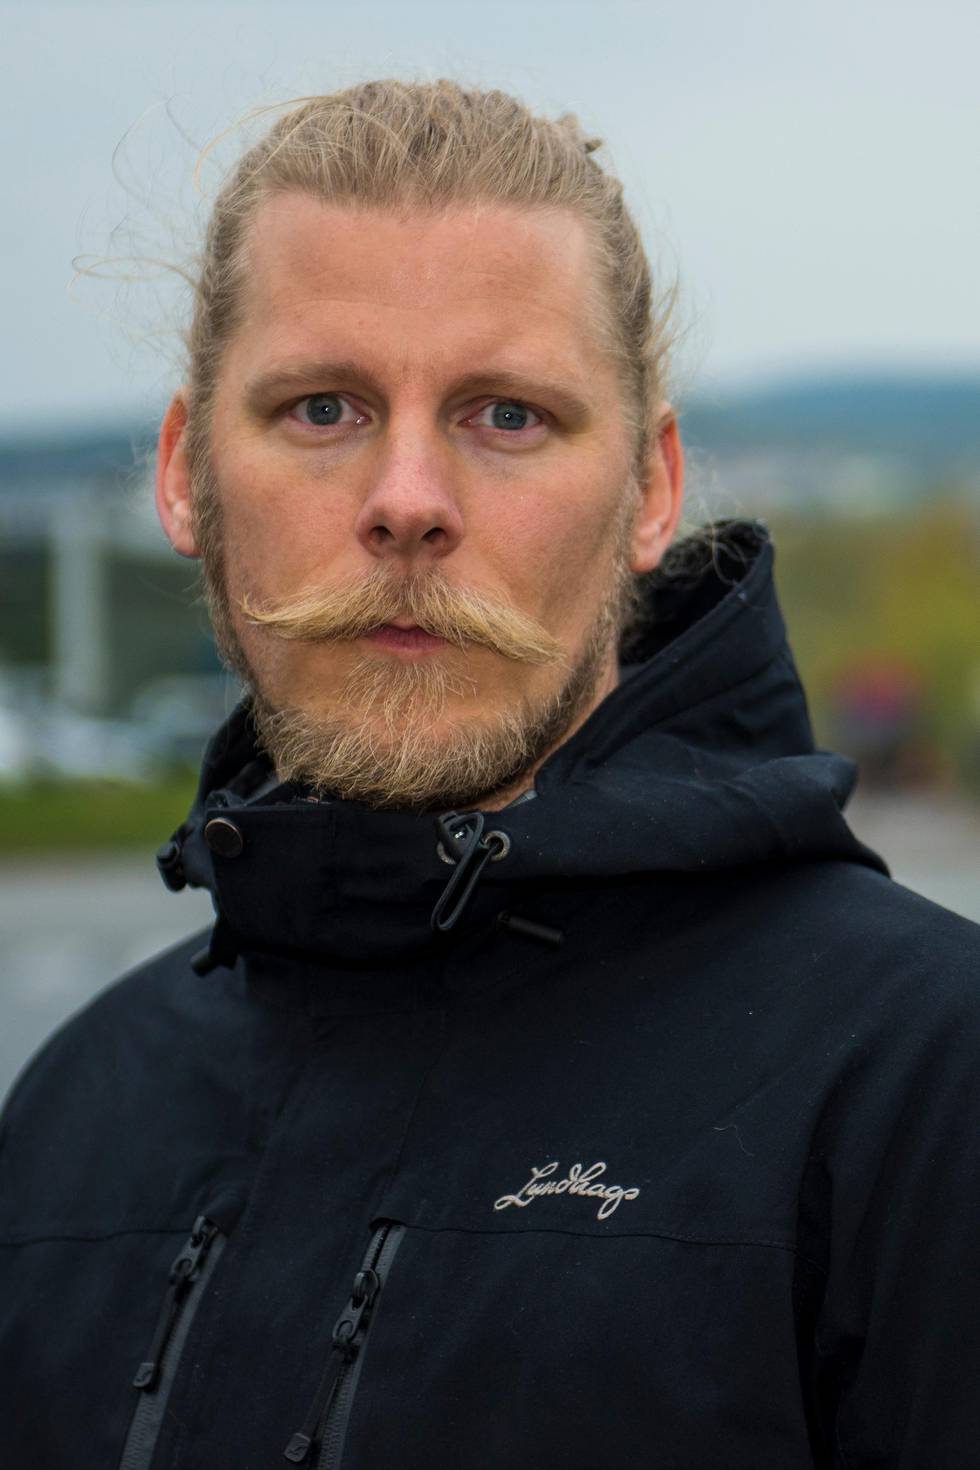 Samuel Rostøl i Norsk vegansamfunn sier at veganisme er en moralsk overbevisning, og bør bli anerkjent som livssynssamfunn.